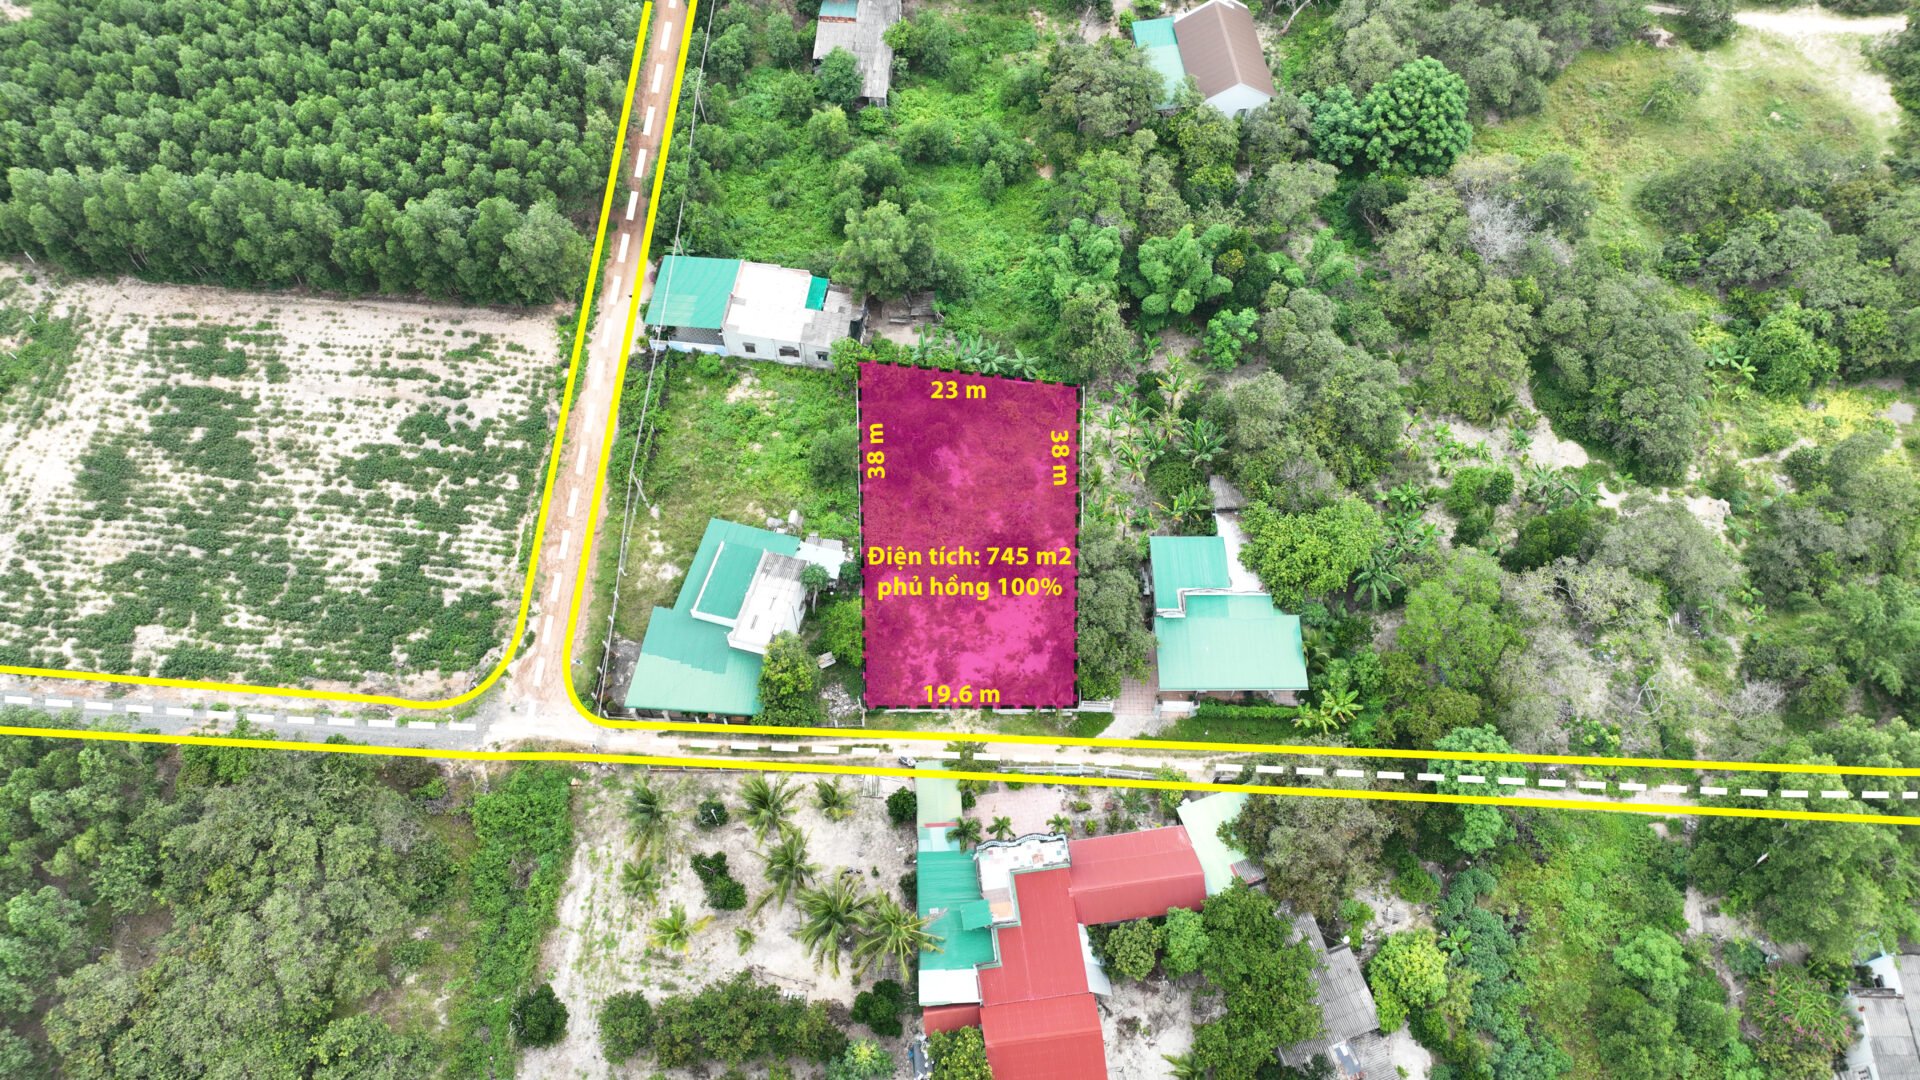 Chủ nhà kẹt tiền cần bán gấp lô đất 19.6x48m Thôn 4 Sơn Mỹ Hàm Tân Bình Thuận.